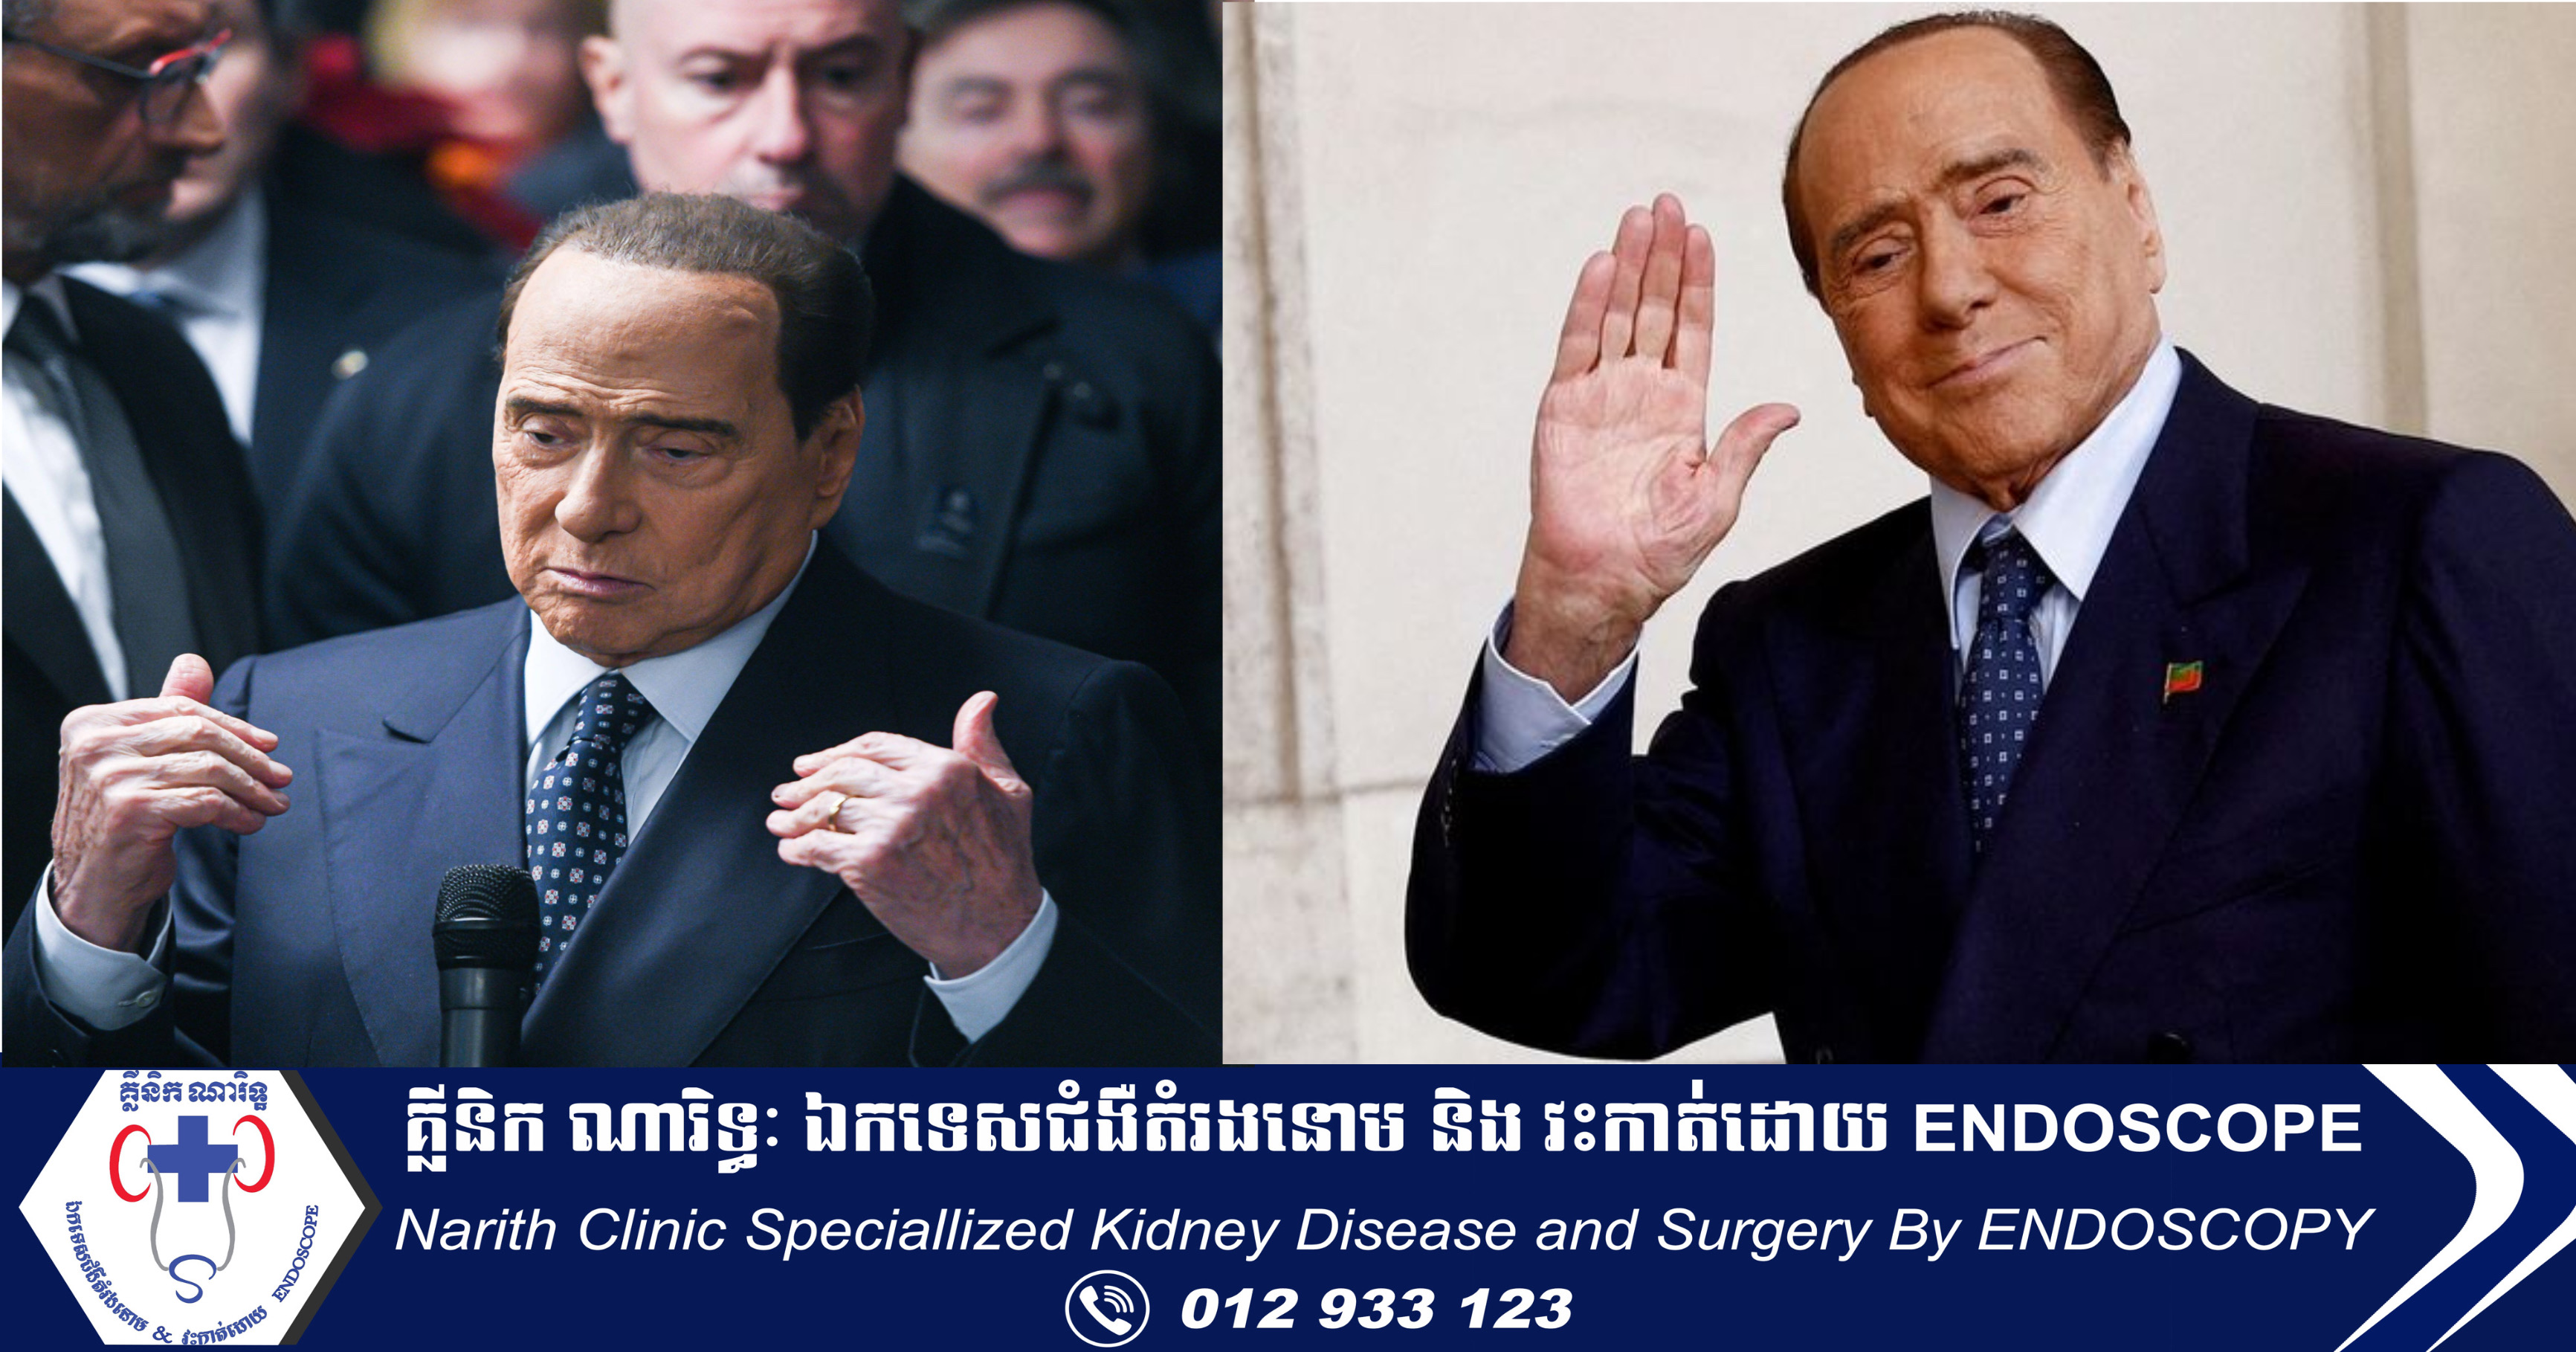 អតីតនាយករដ្ឋមន្ត្រីអ៊ីតាលី Silvio Berlusconi បានទទួលមរណភាពក្នុងអាយុ ៨៦ឆ្នាំ